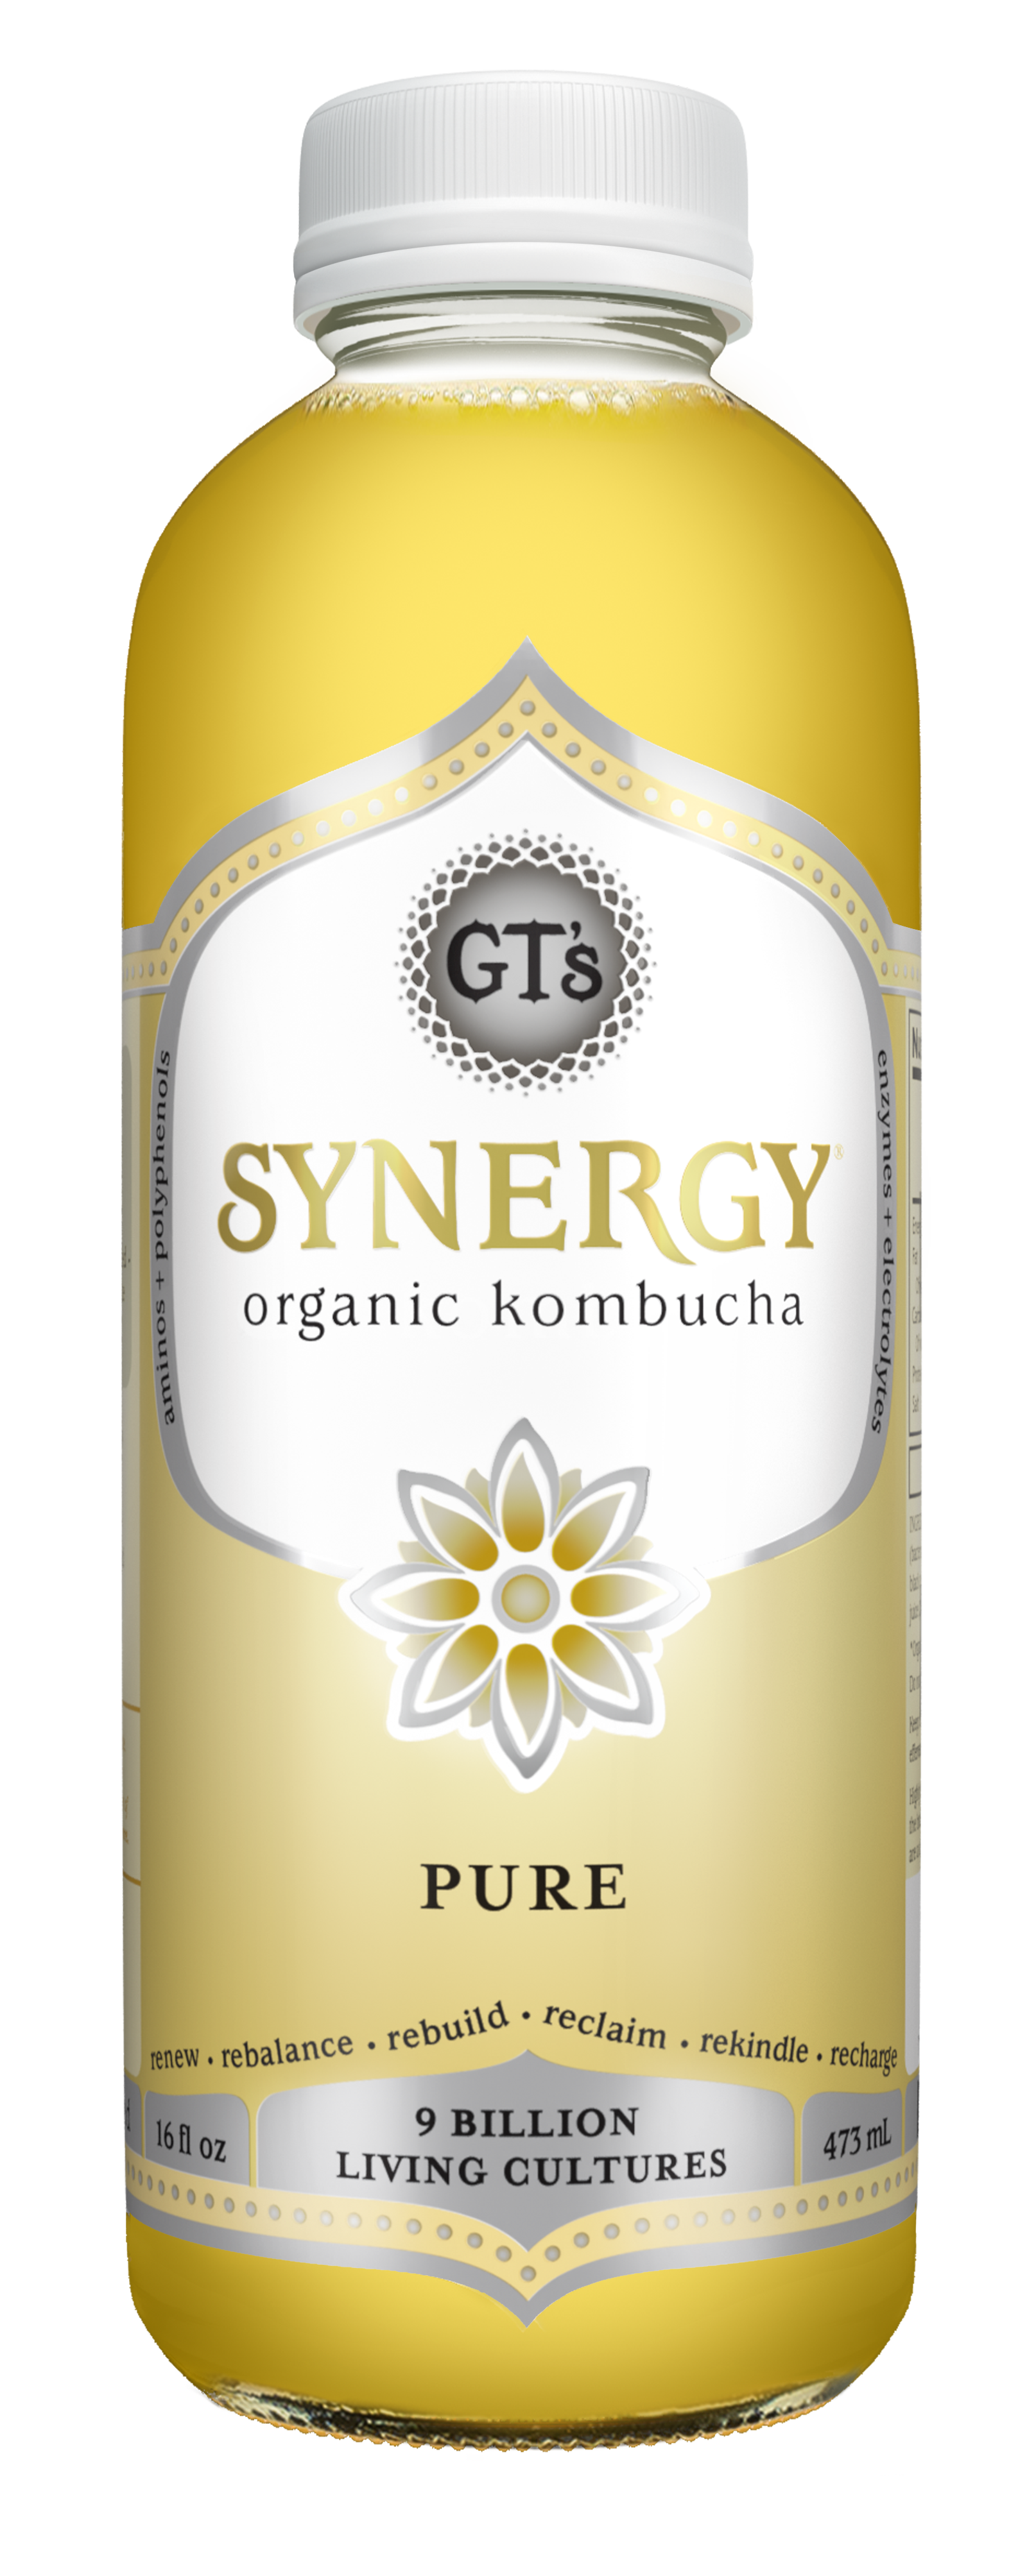 GT's Synergy Kombucha Pure 12 units per case 16.0 fl